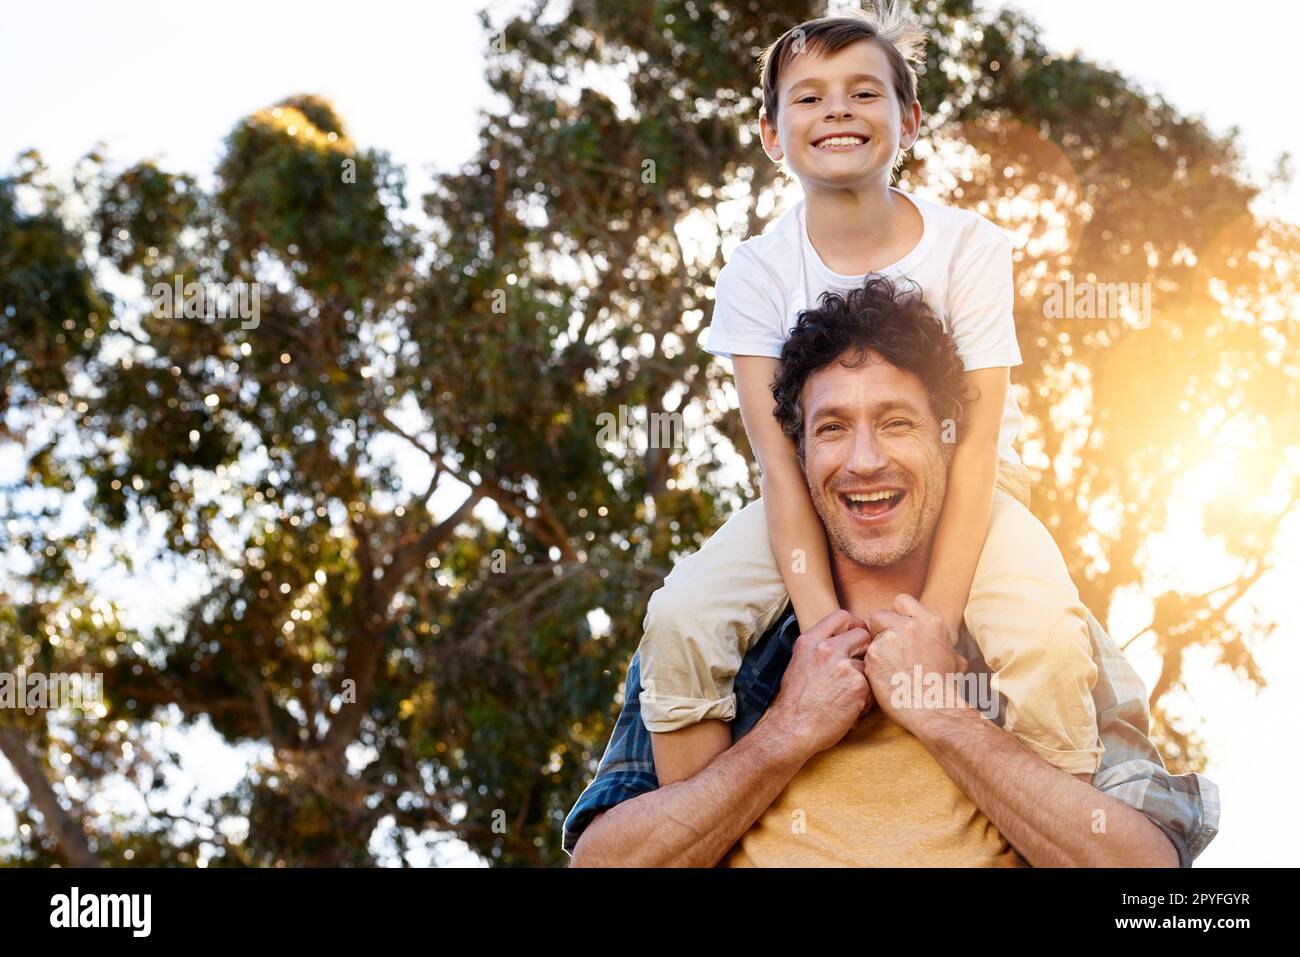 Assicurarsi che il suo ragazzo è divertente. Ritratto di un padre felice che porta il figlio piccolo sulle spalle all'aperto. Foto Stock